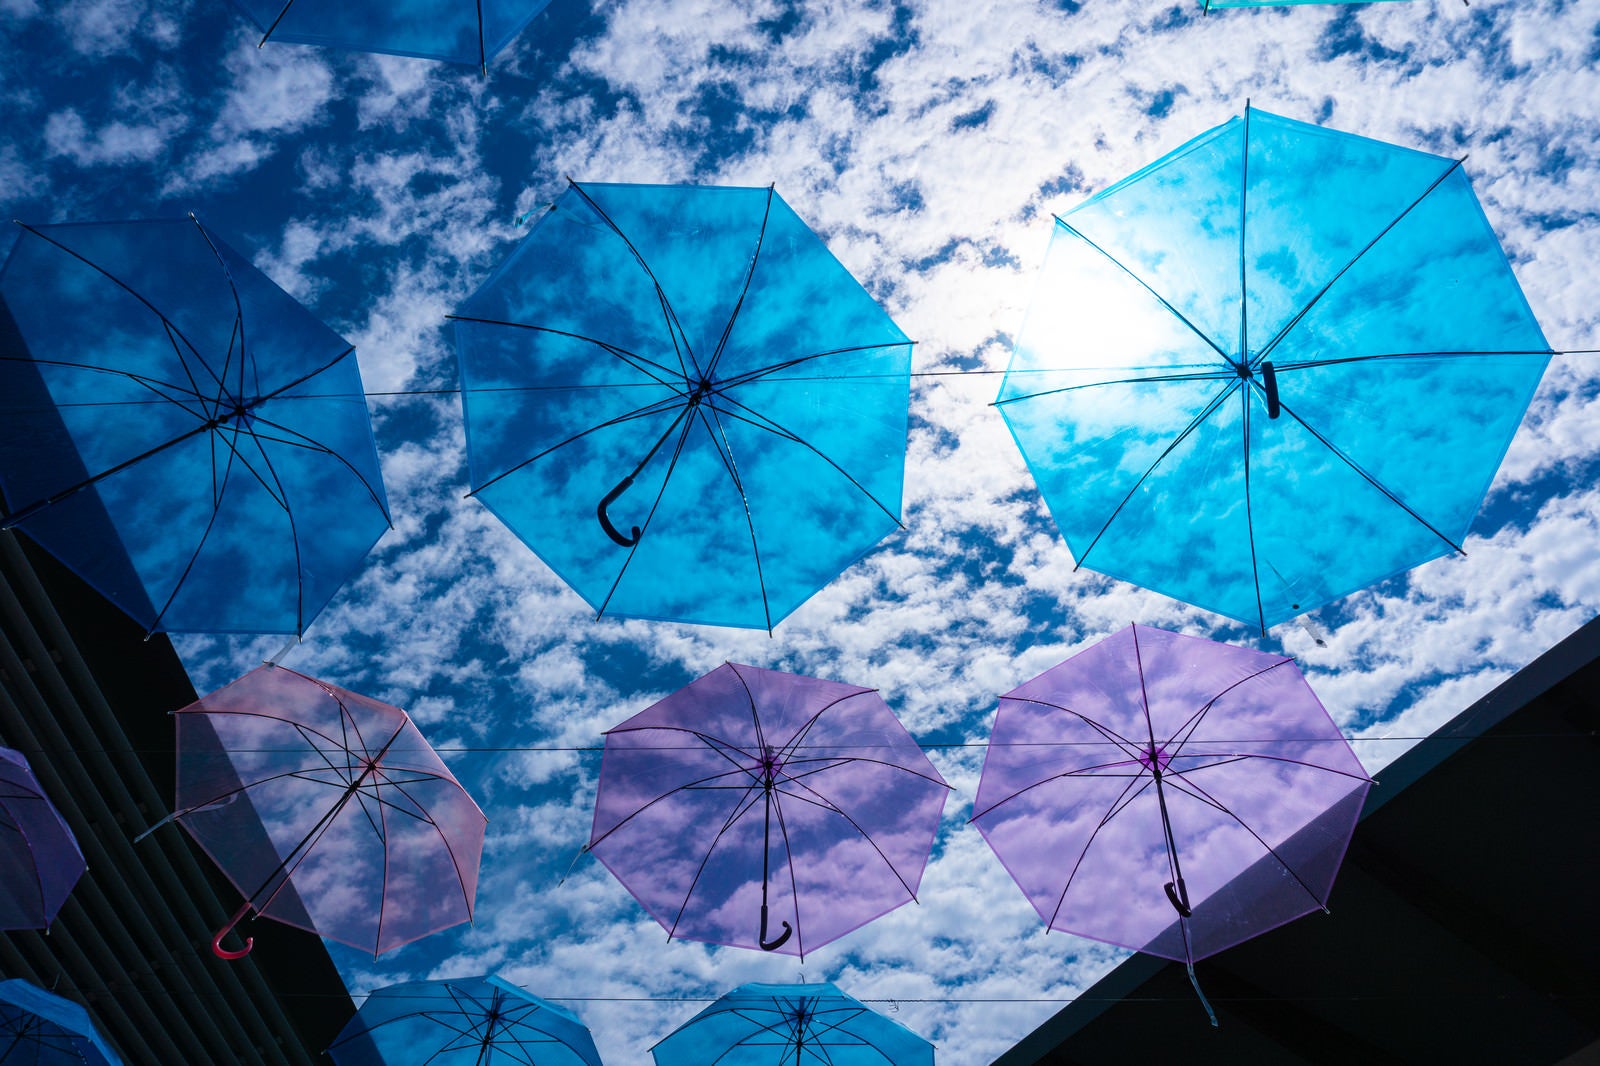 「青い傘と羊雲の青空」の写真